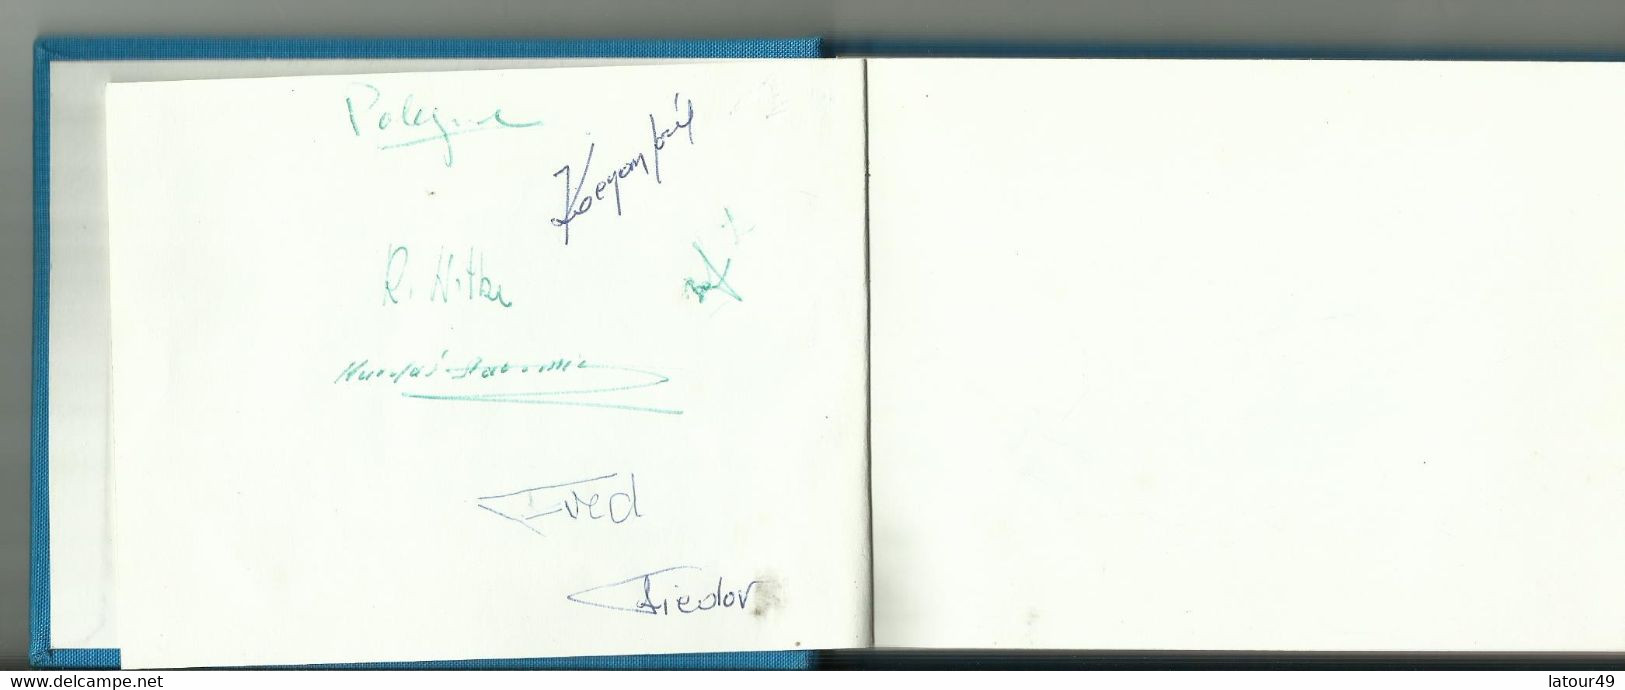 Jeux Olympique Grenoble1968  Autographes Pologne.jozet Kocjan Crwin Fredor Etc. Norvege Bjorn Wirkola Porte Drapeau Etc - Autógrafos